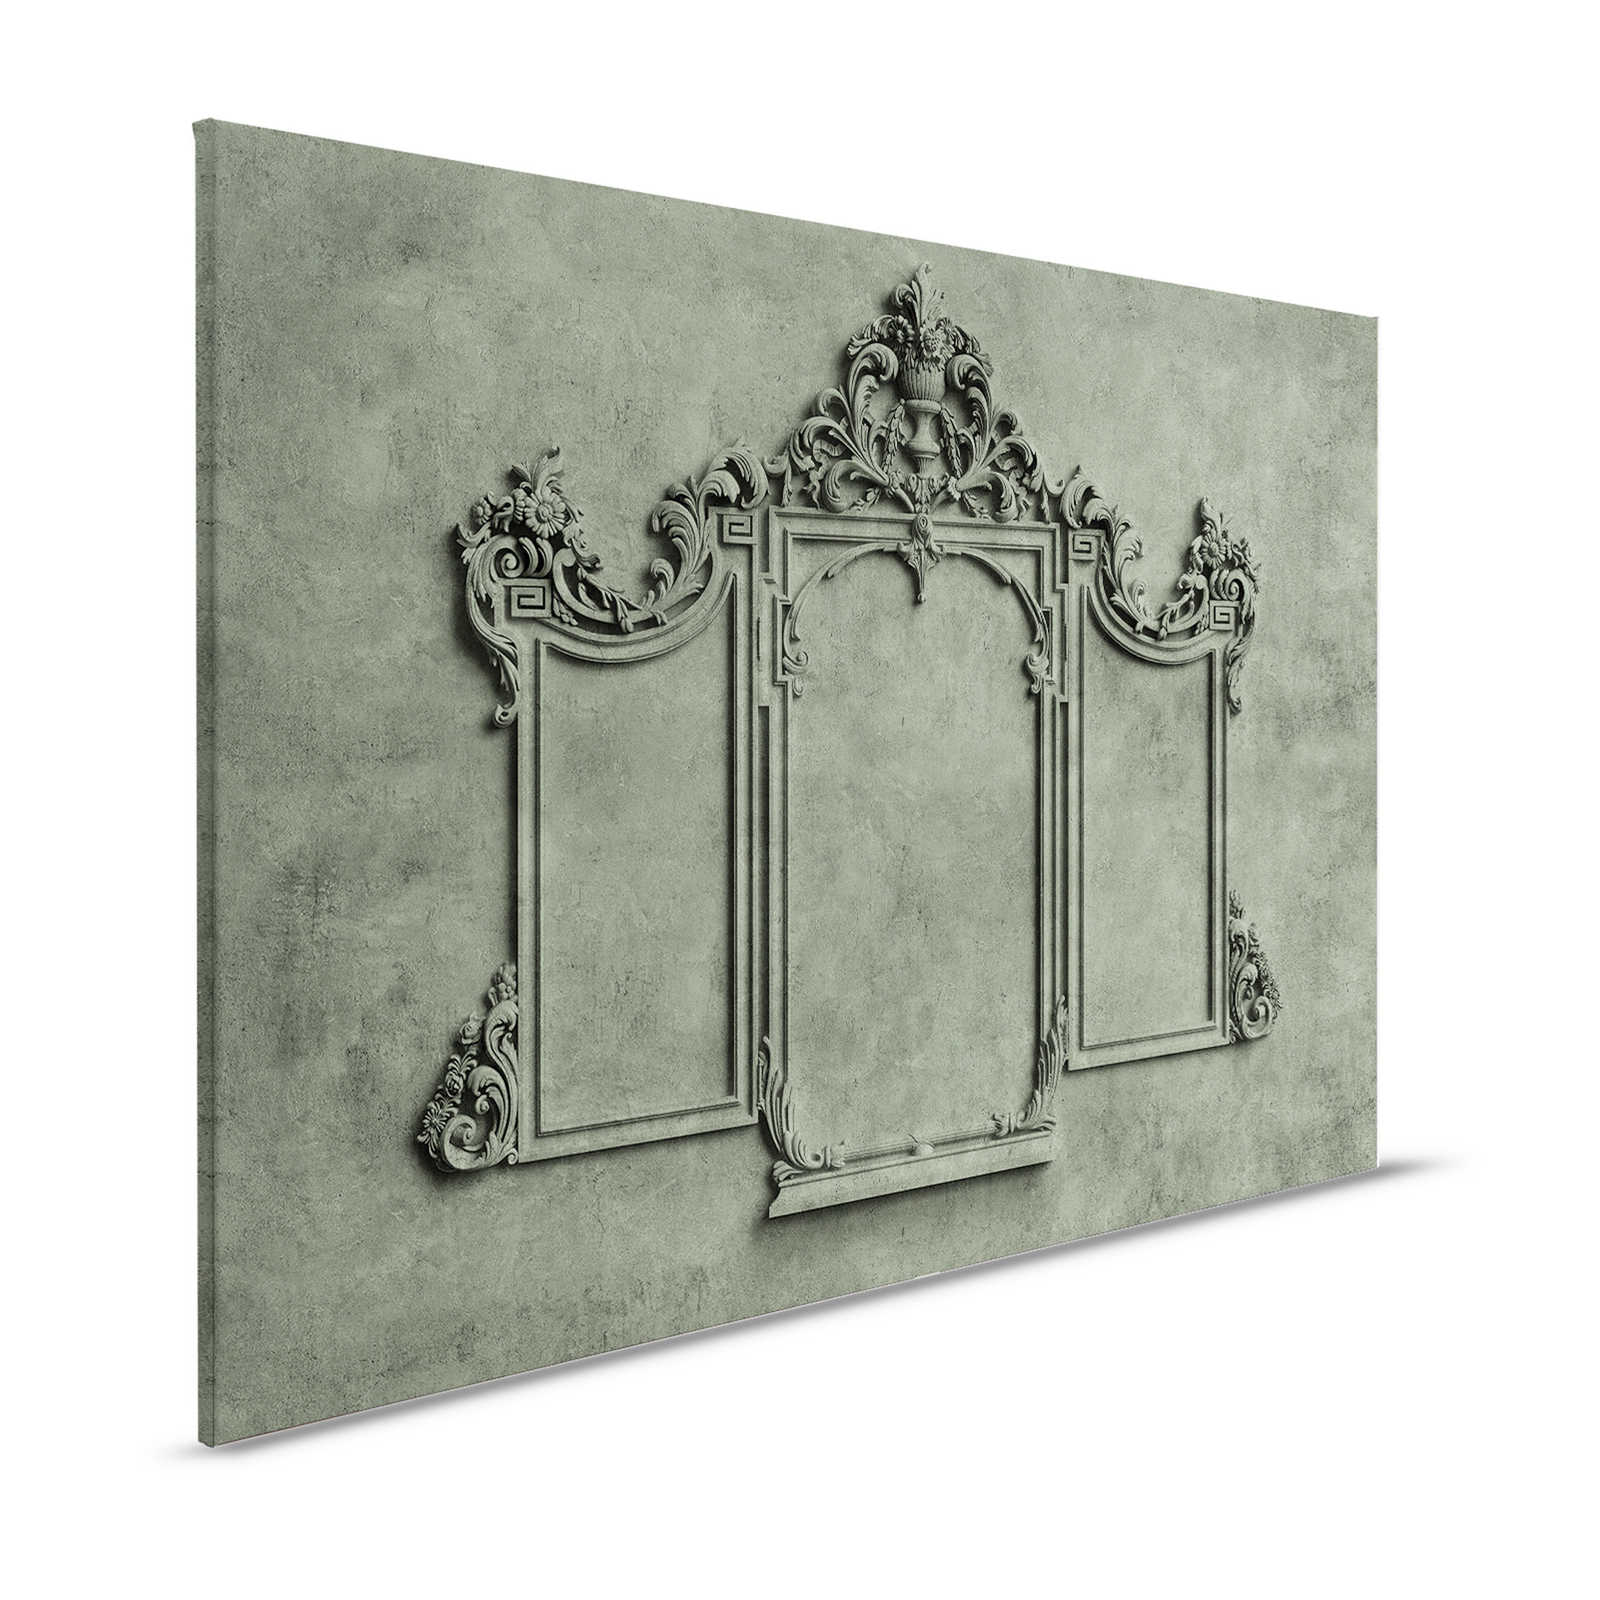 Lyon 2 - Toile 3D cadre stuc & aspect plâtre vert - 1,20 m x 0,80 m
